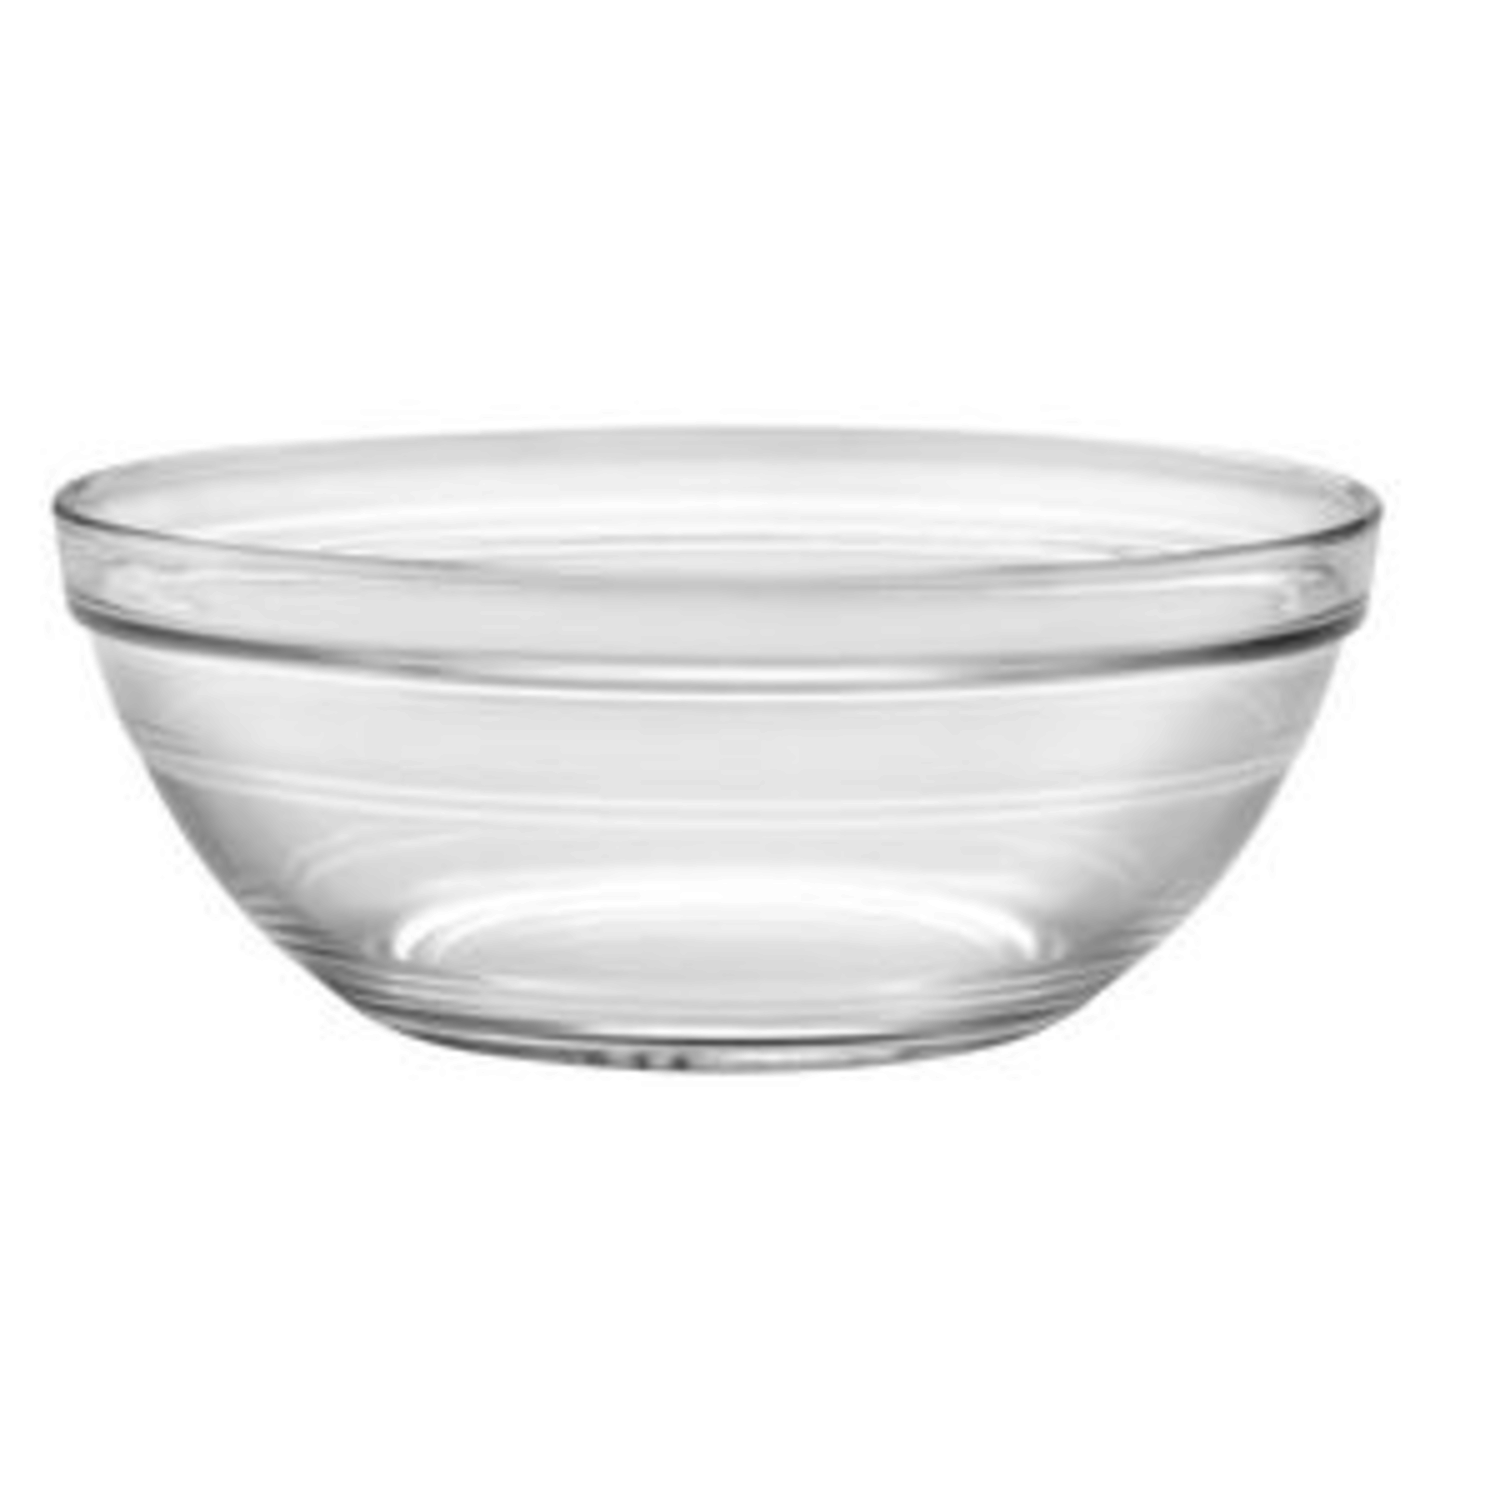 https://cdn.shoplightspeed.com/shops/633447/files/18940870/1500x4000x3/duralex-duralex-15-quart-glass-mixing-bowl.jpg